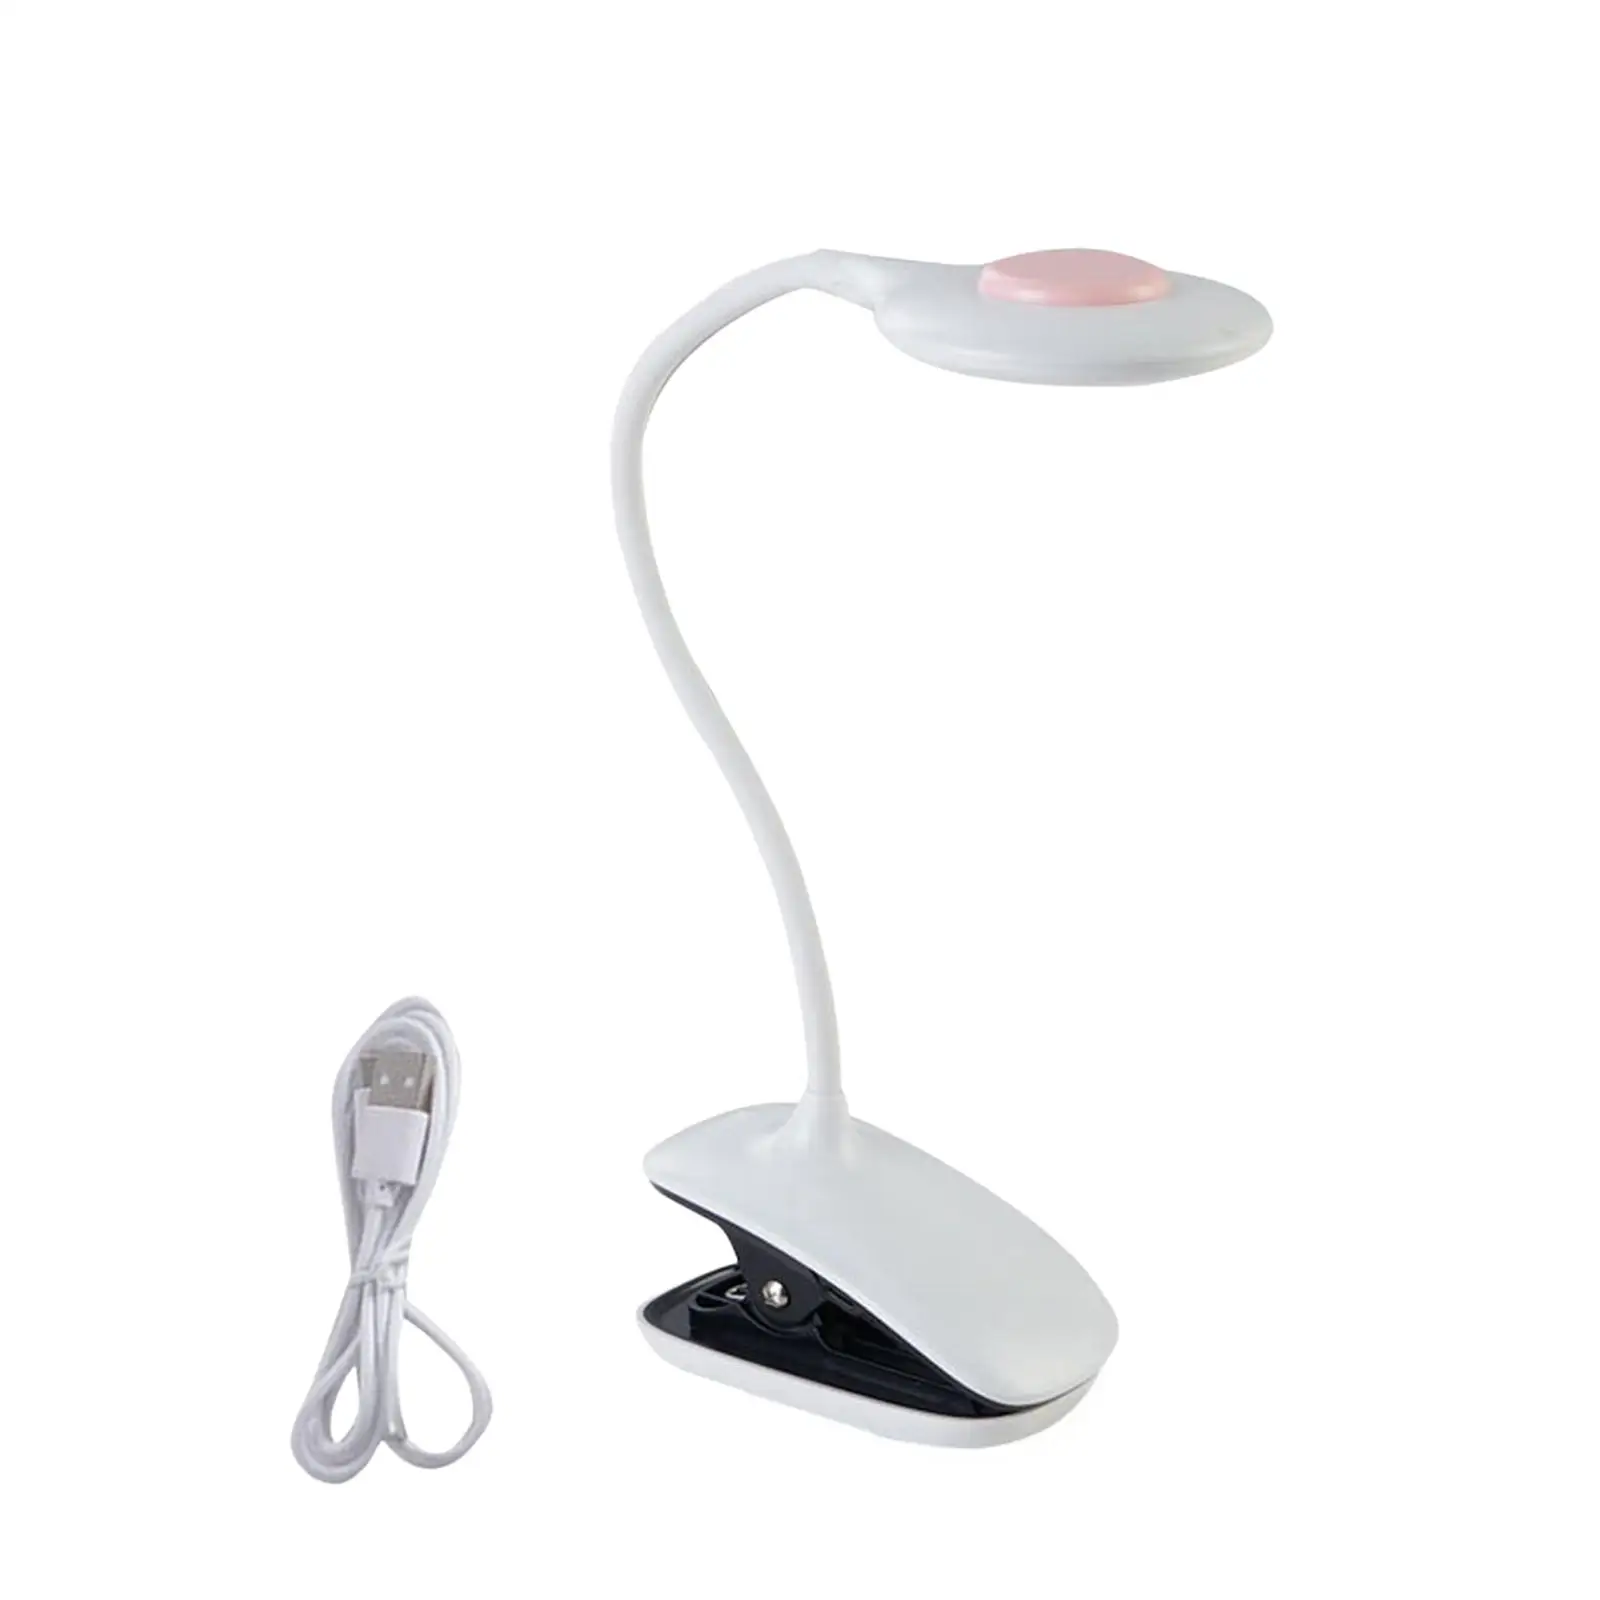 UV LED Nail Lamp Portable Small Quick Dry Nail Polish Dryer UV LED Light for Gel Nail Mobile Repair Home Salon Manicure Decor